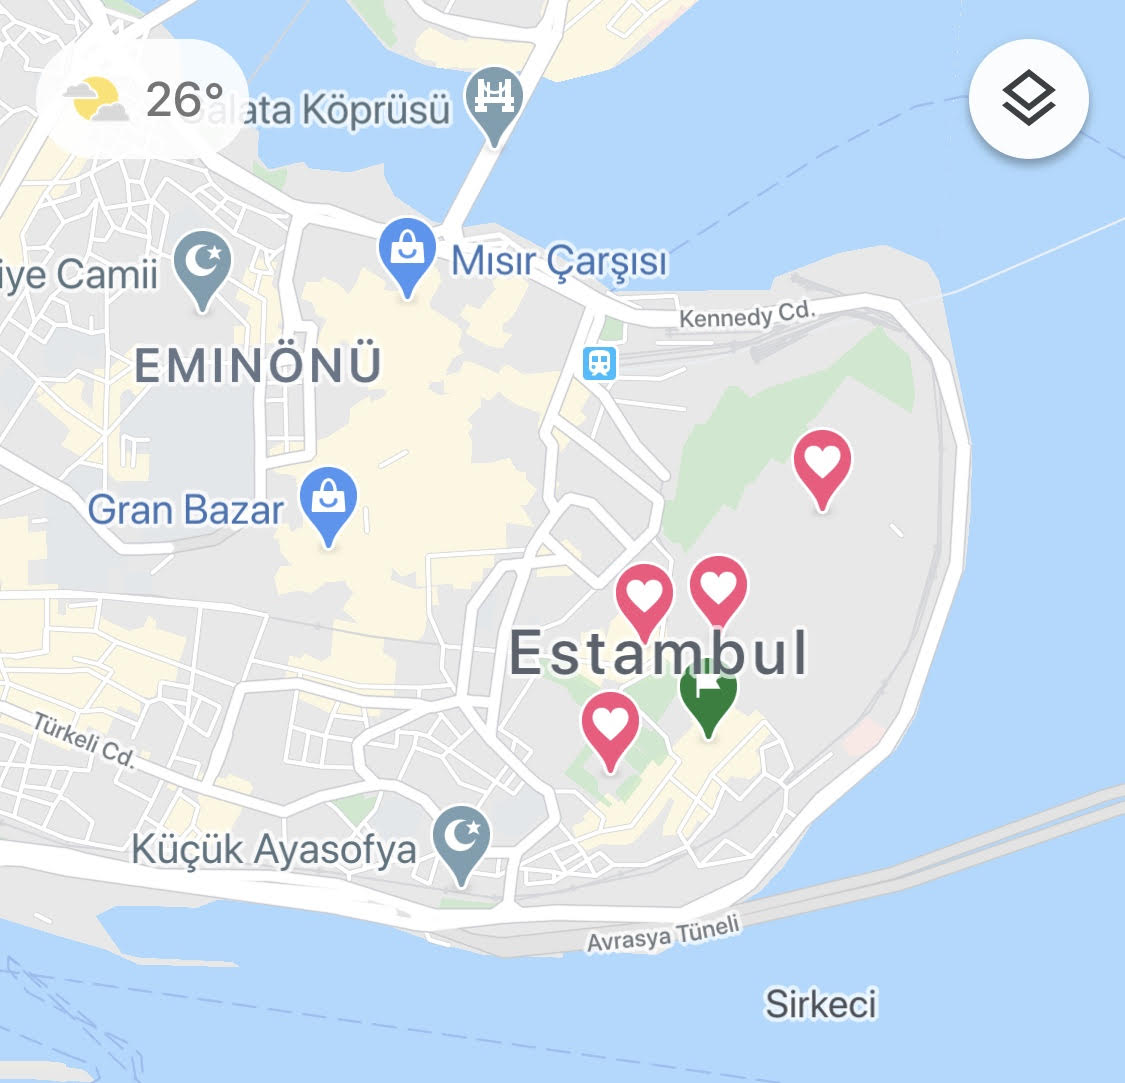 Mapa de Estambul con anotaciones para perder miedos viajeros